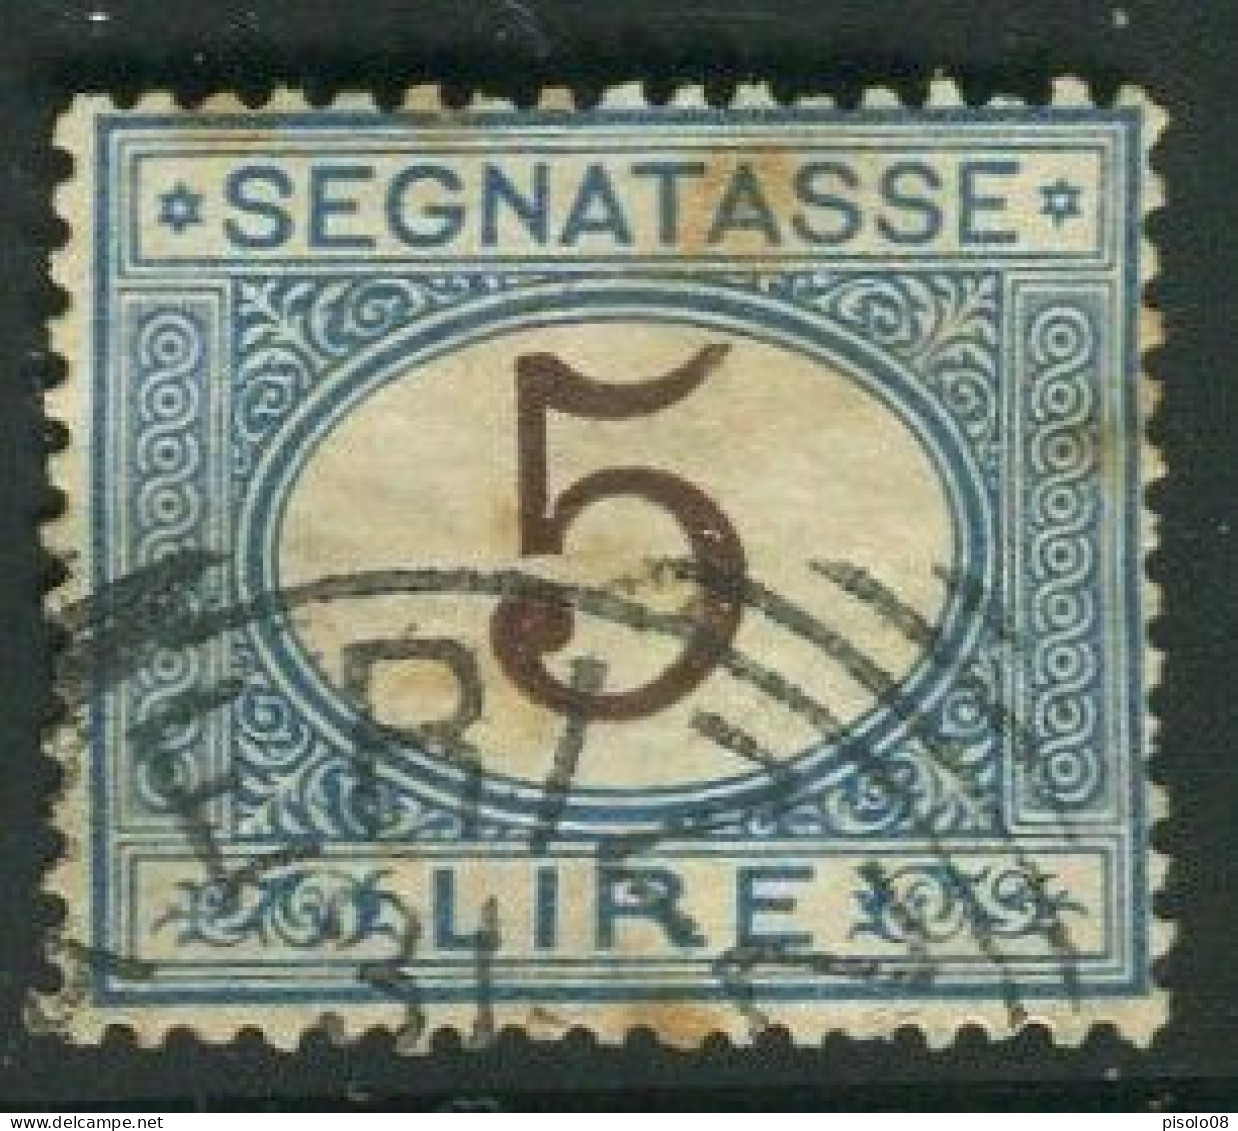 REGNO 1870-94 SEGNATASSE 5 LIRE USATO - Postage Due